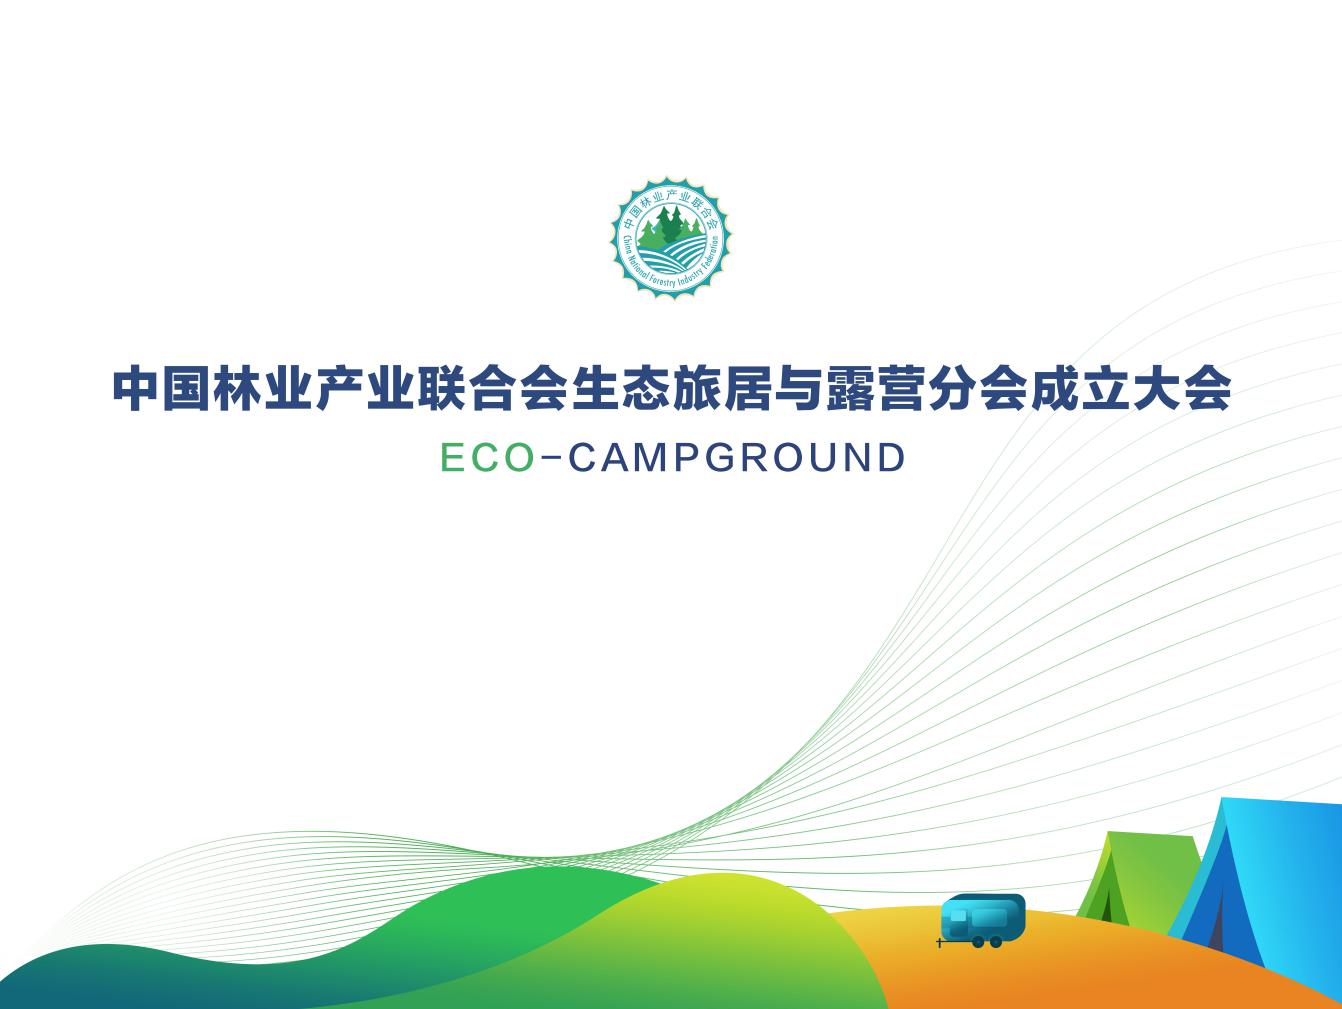 中国林业产业联合会生态旅居与露营分会在京成立